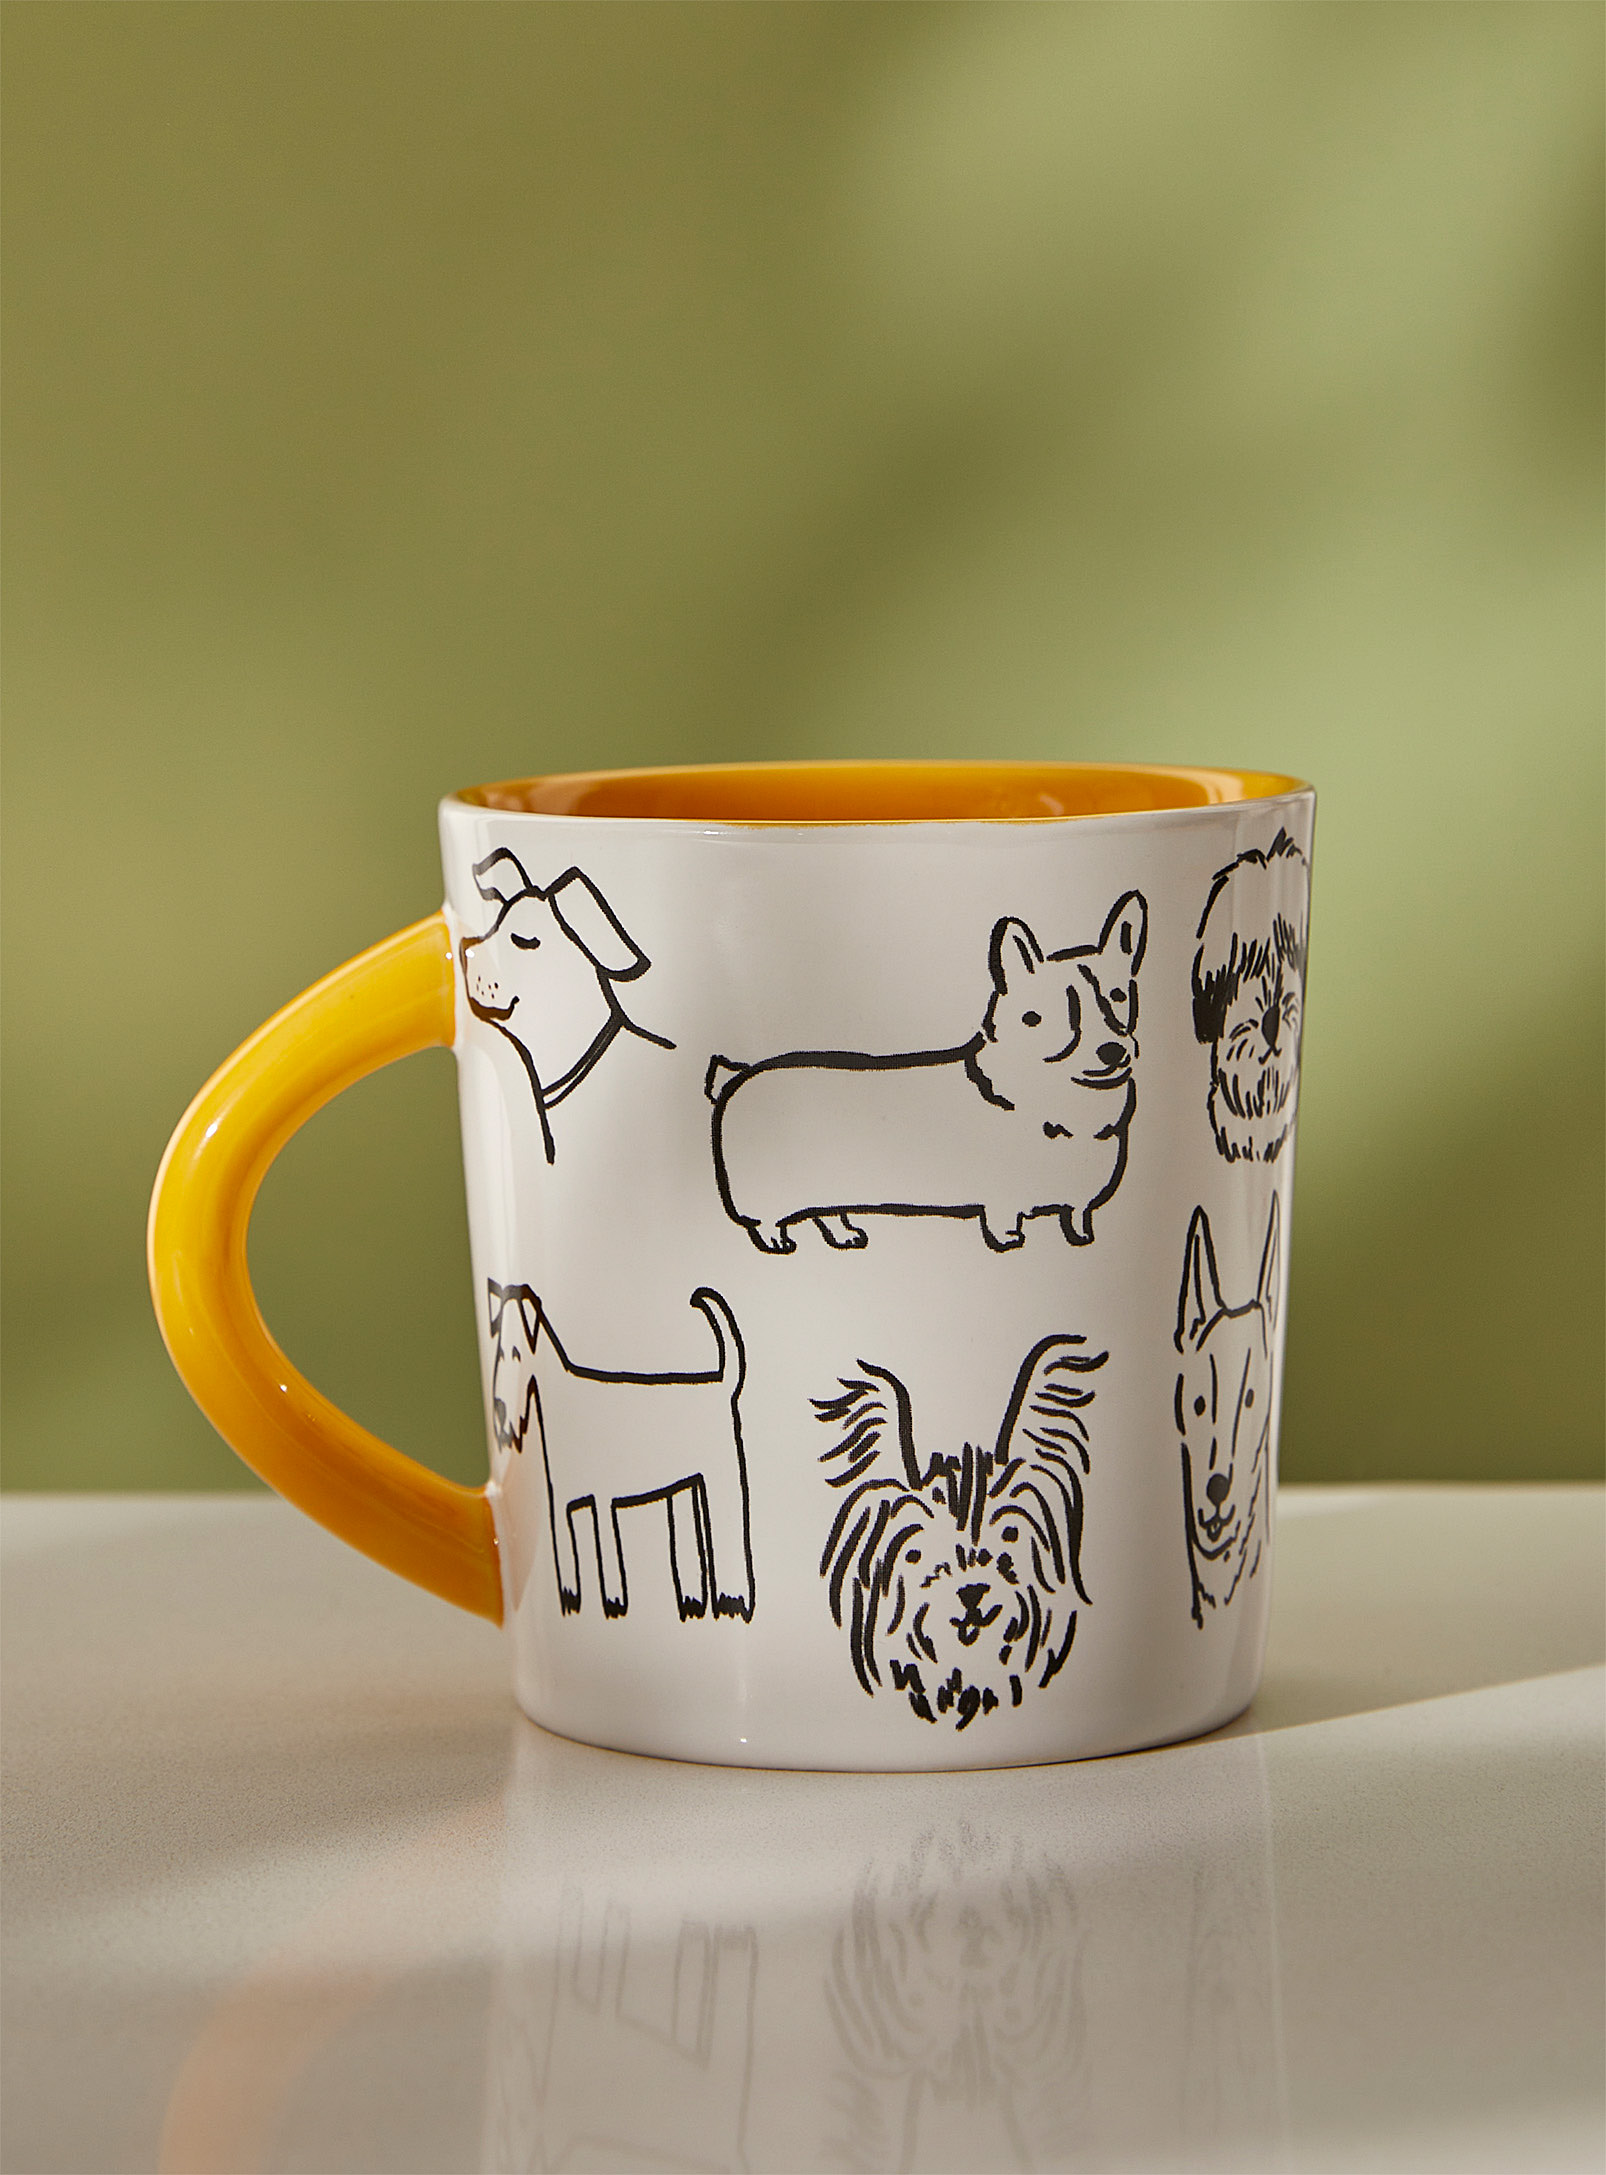 Danica - Drawn dogs mug